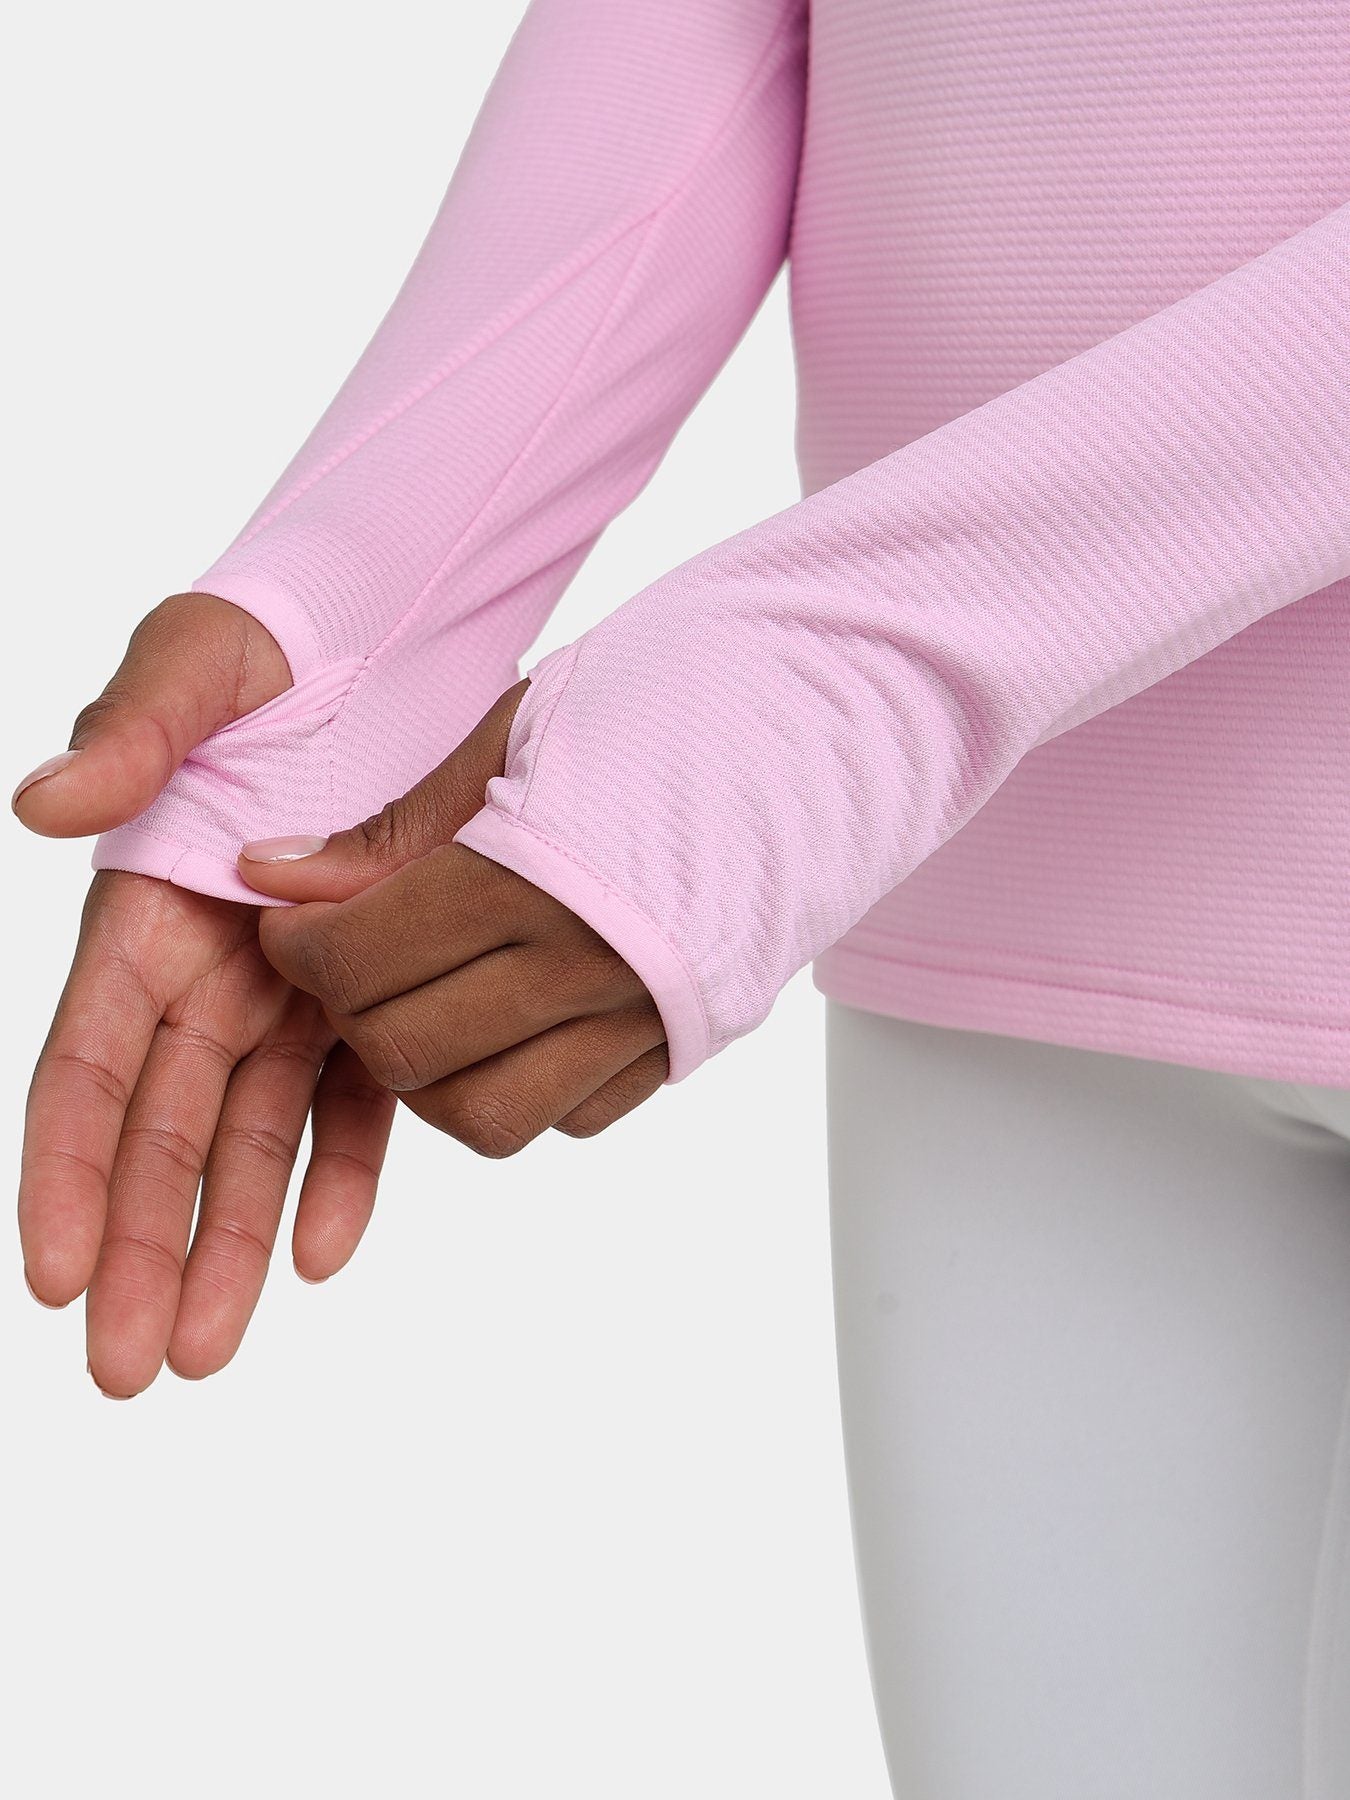 Cloud Fleece Quarter Zip Running Top For Women With Thumbholes & Side Zip Pocket